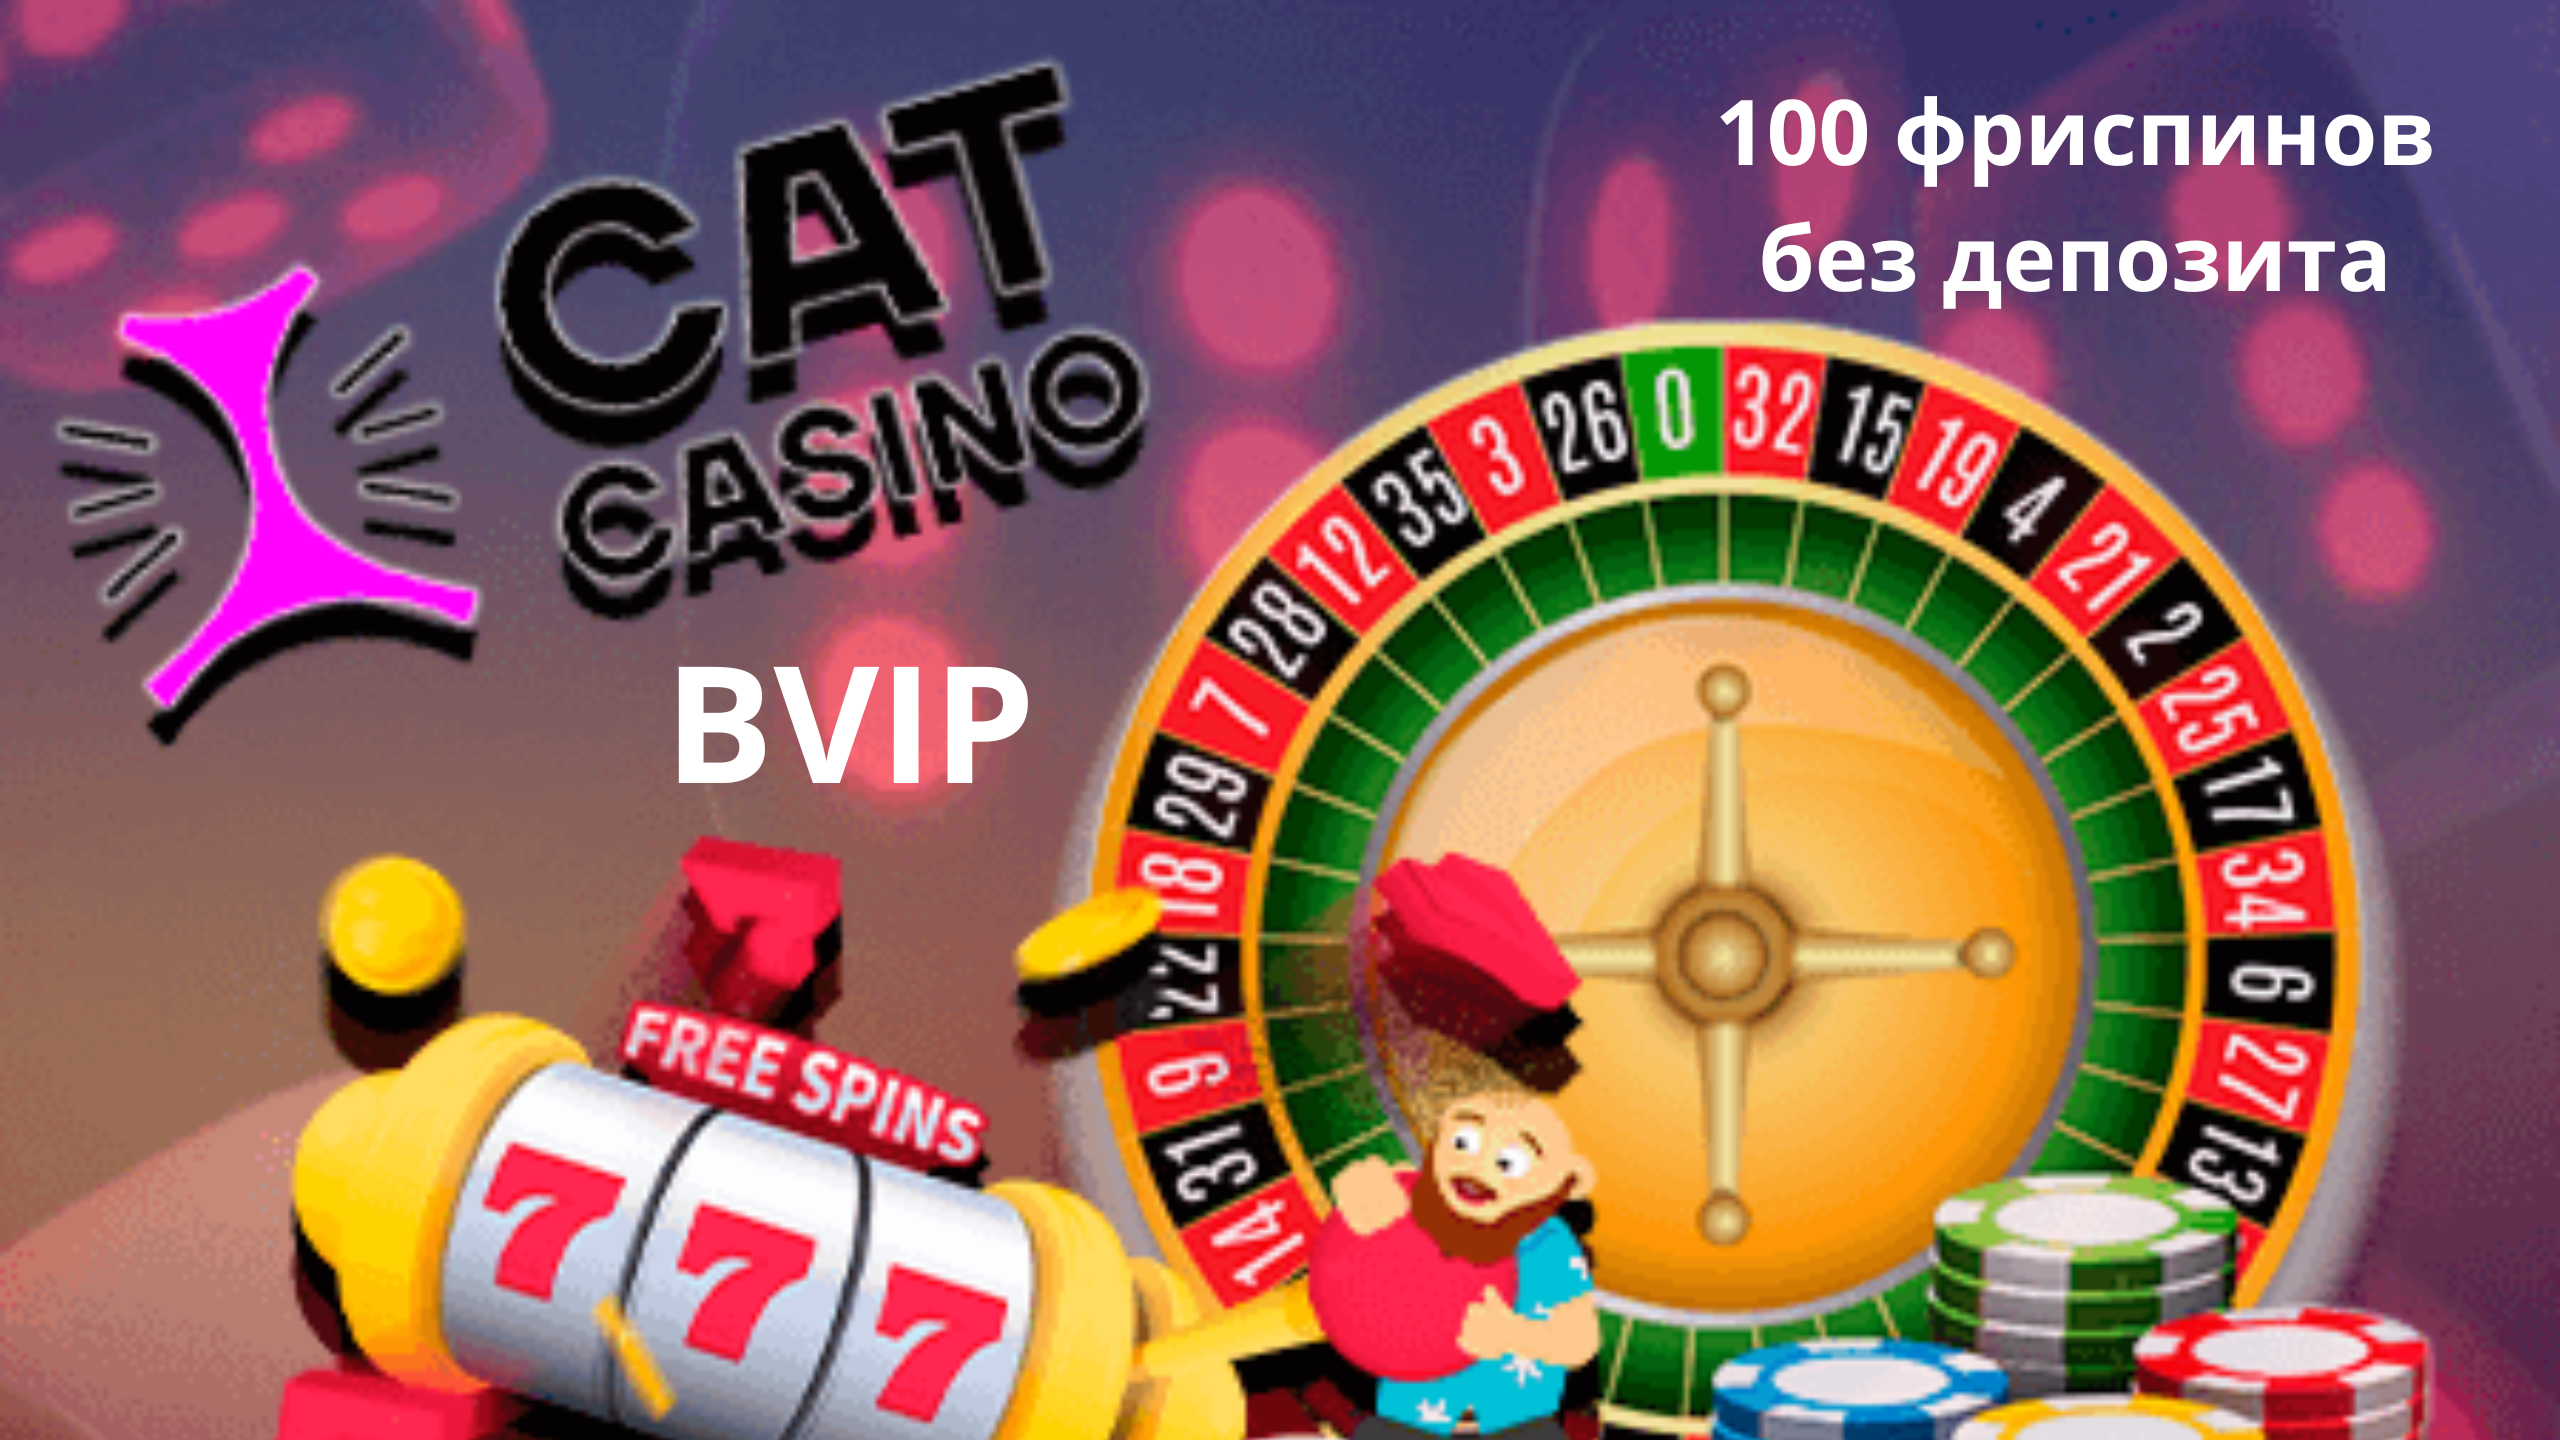 Cat casino бонус всетопказино4